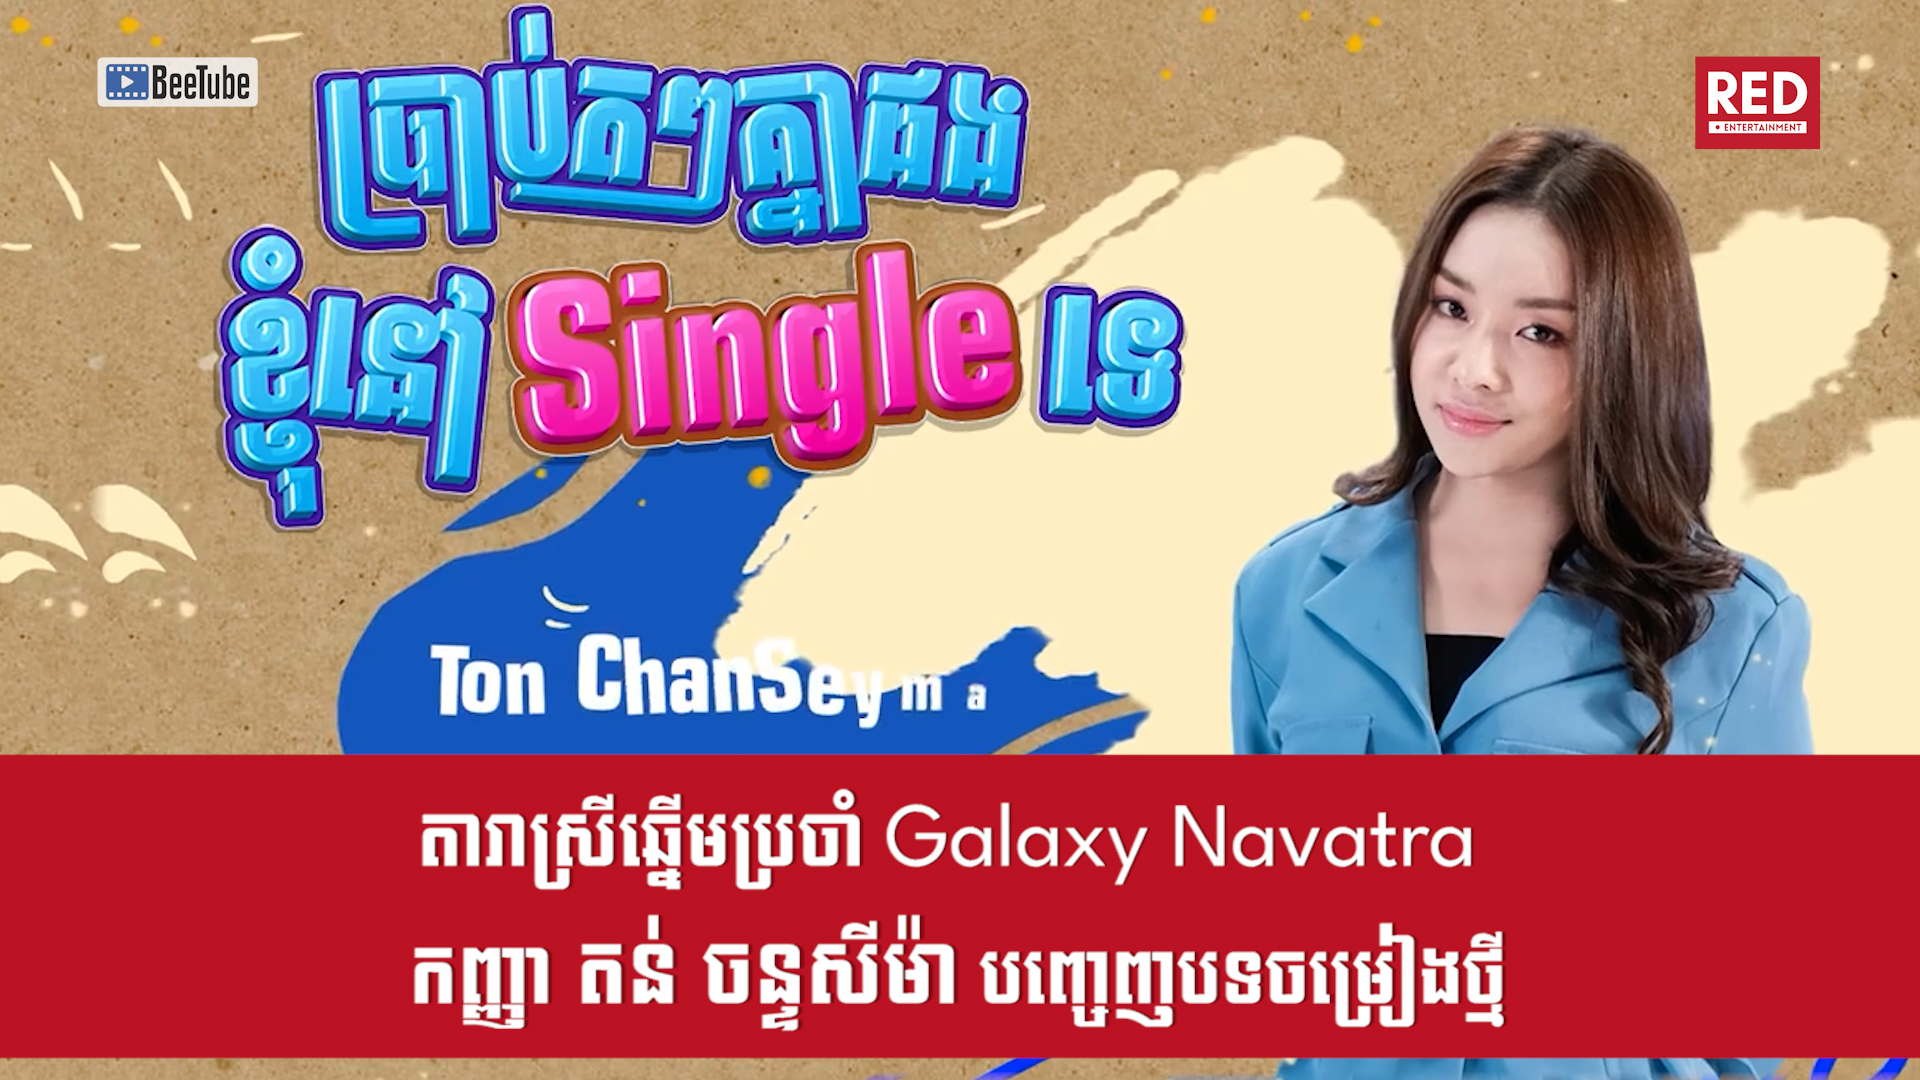 តារាចម្រៀងស្រីឆ្នើមប្រចាំផលិតកម្ម Galaxy Navatra តន់ ចន្ទសីម៉ា បញ្ចេញបទចម្រៀងថ្មី​ ប្រាប់តៗគ្នាផងខ្ញុំនៅ Single ទេ